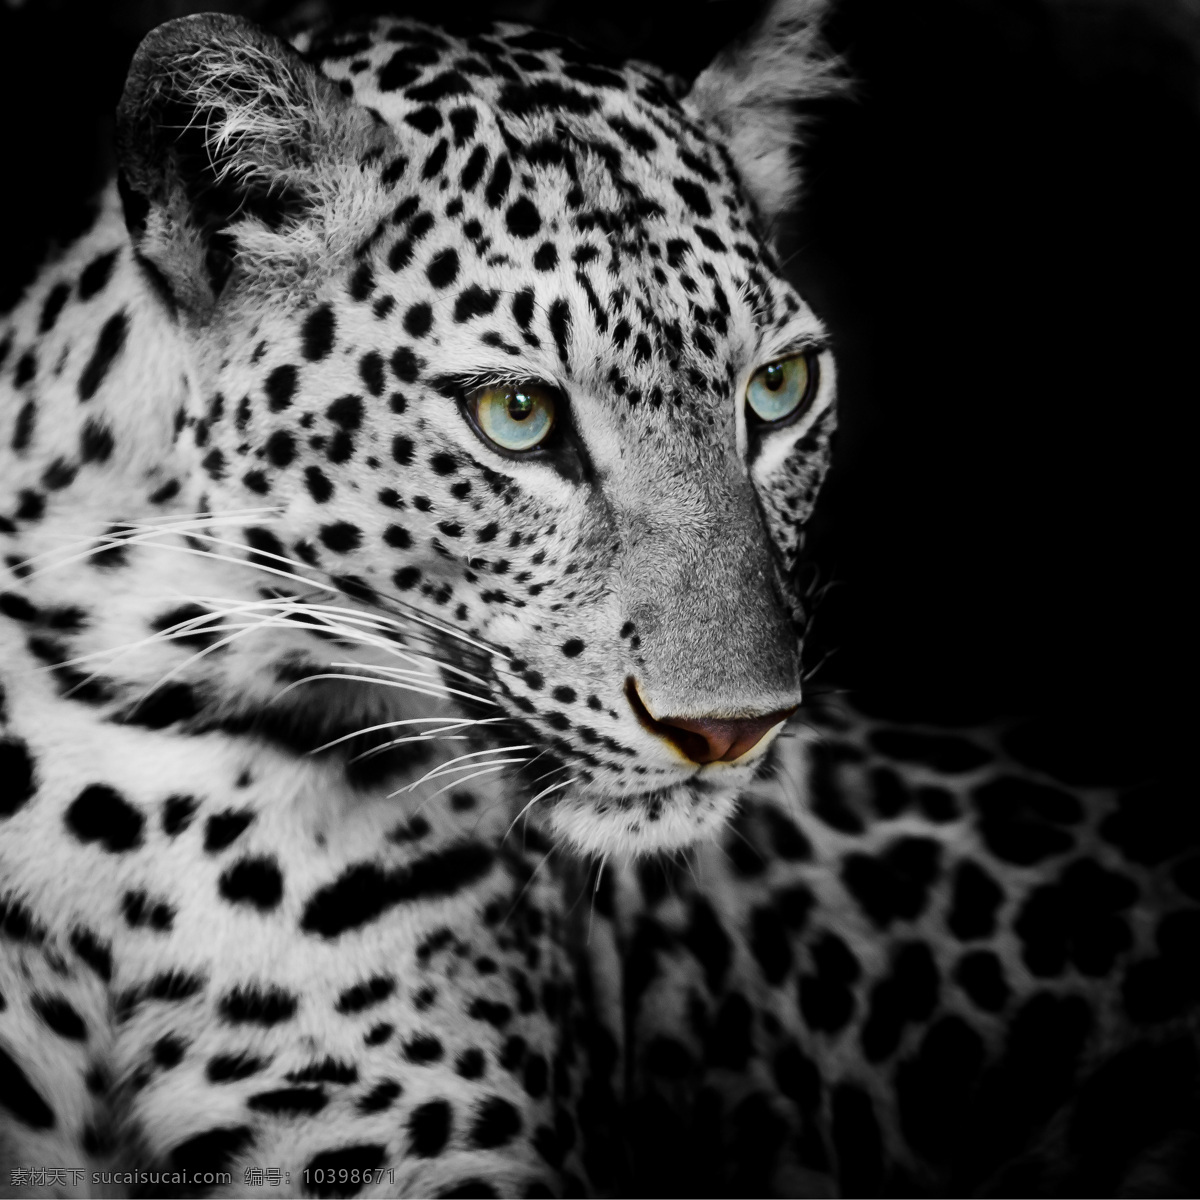 豹子头部摄影 豹子 猎豹 野生动物 动物摄影 动物世界 陆地动物 生物世界 黑色